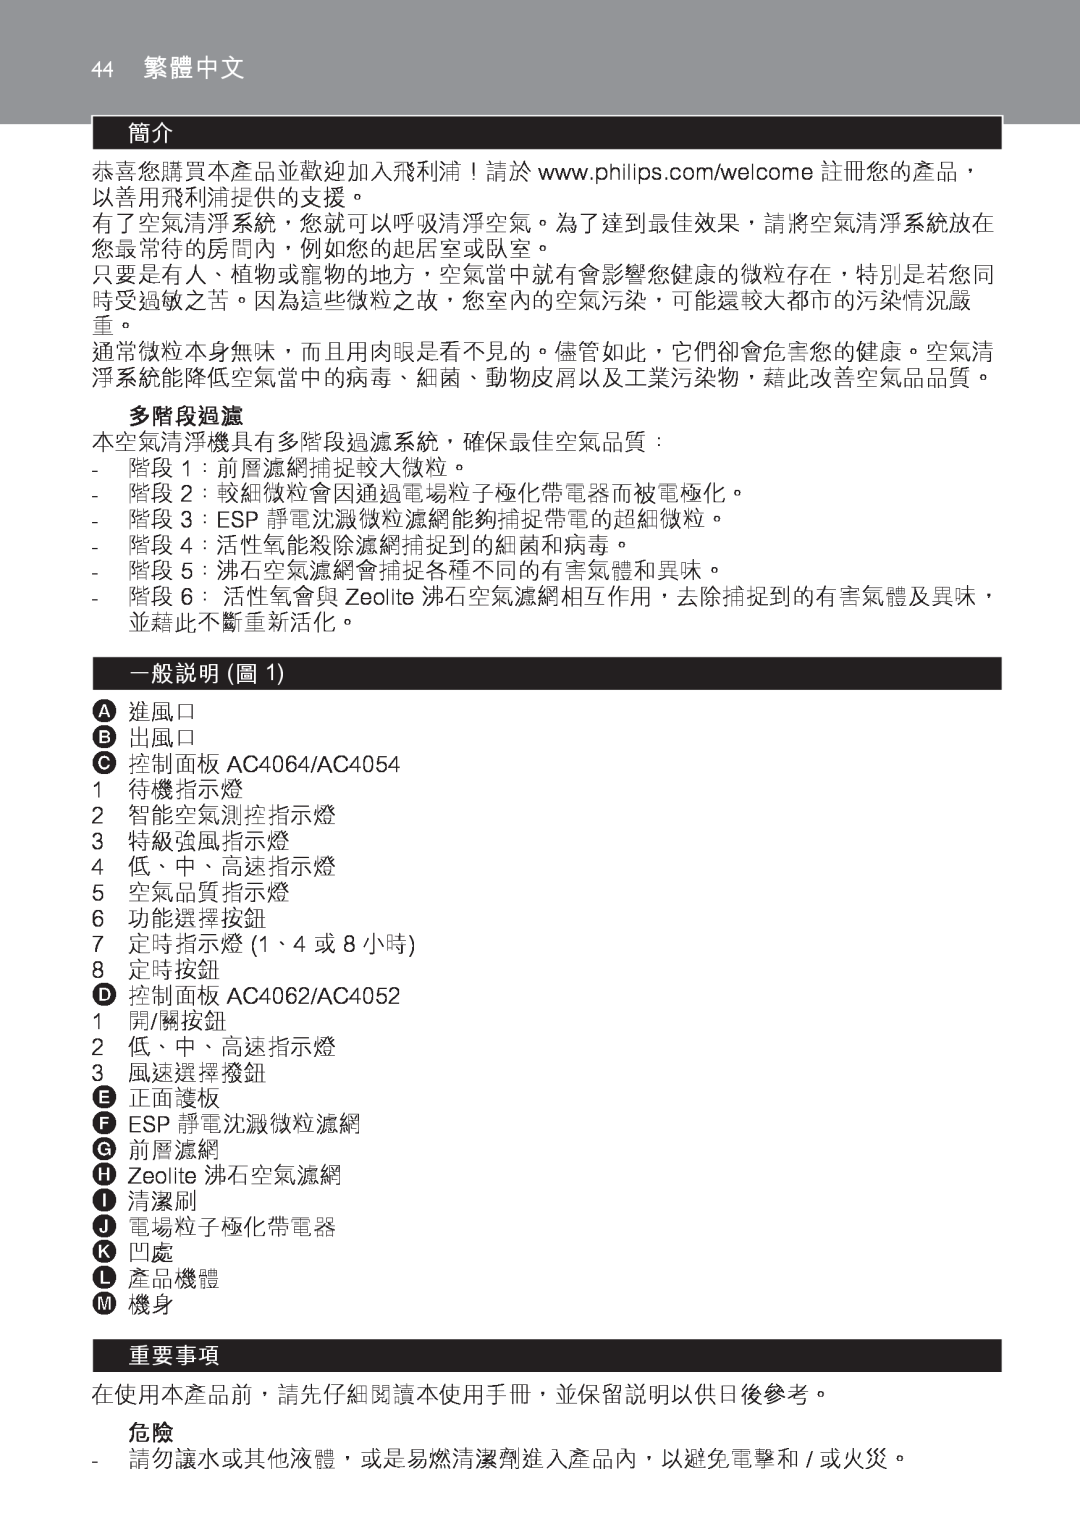 Philips AC4118, AC4108 manual 多階段過濾, 一般說明 圖, 重要事項, 44繁體中文 